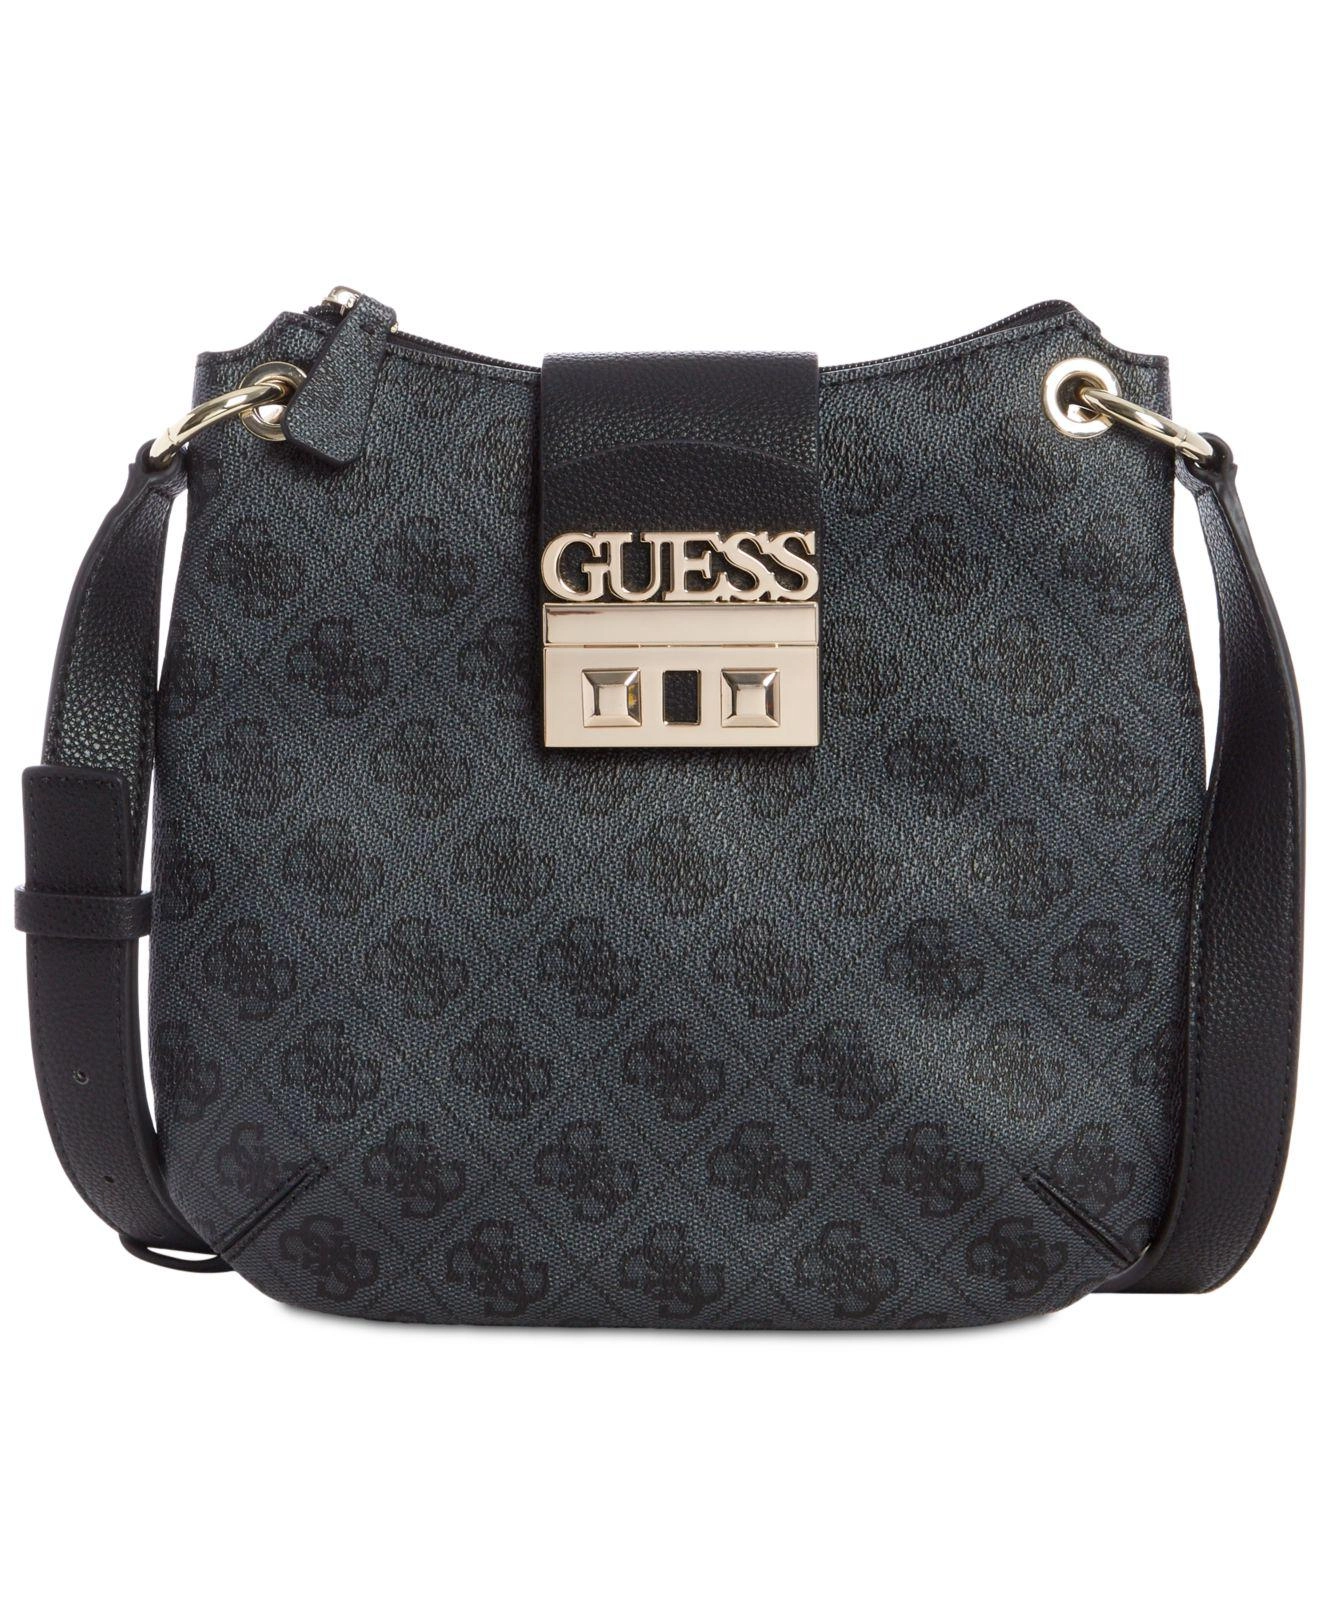 ТОП-10 сумок бренда Guess